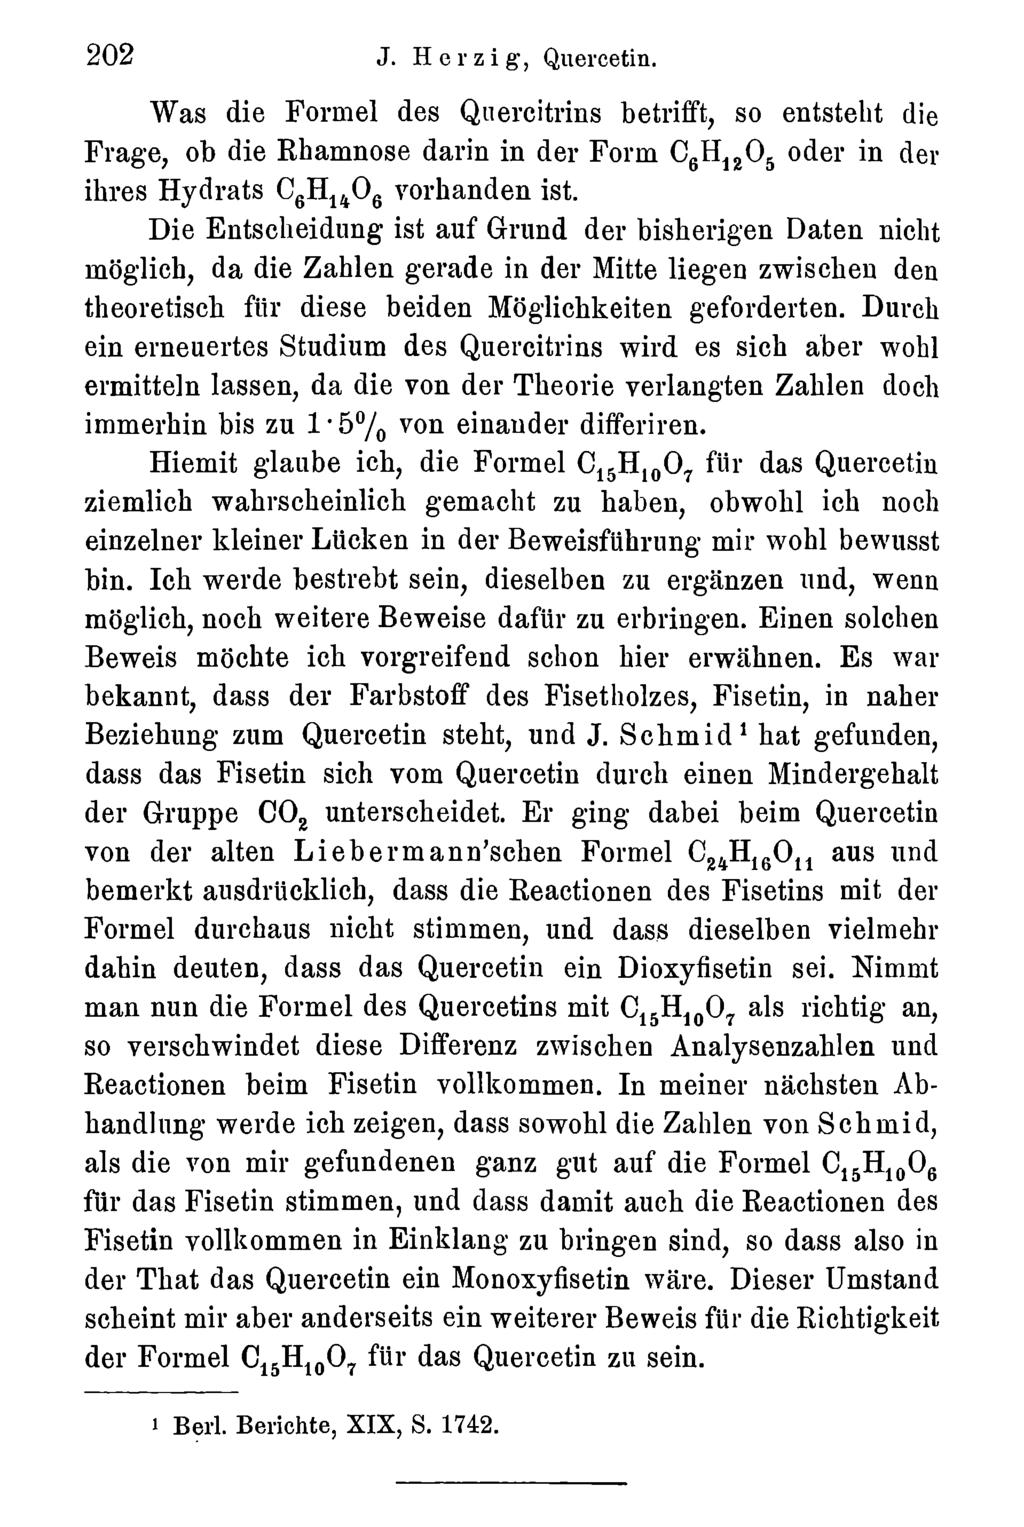 202 J. Herzig, Quercetin. Akademie d. Wissenschaften Wien; download unter www.biologiezentrum.